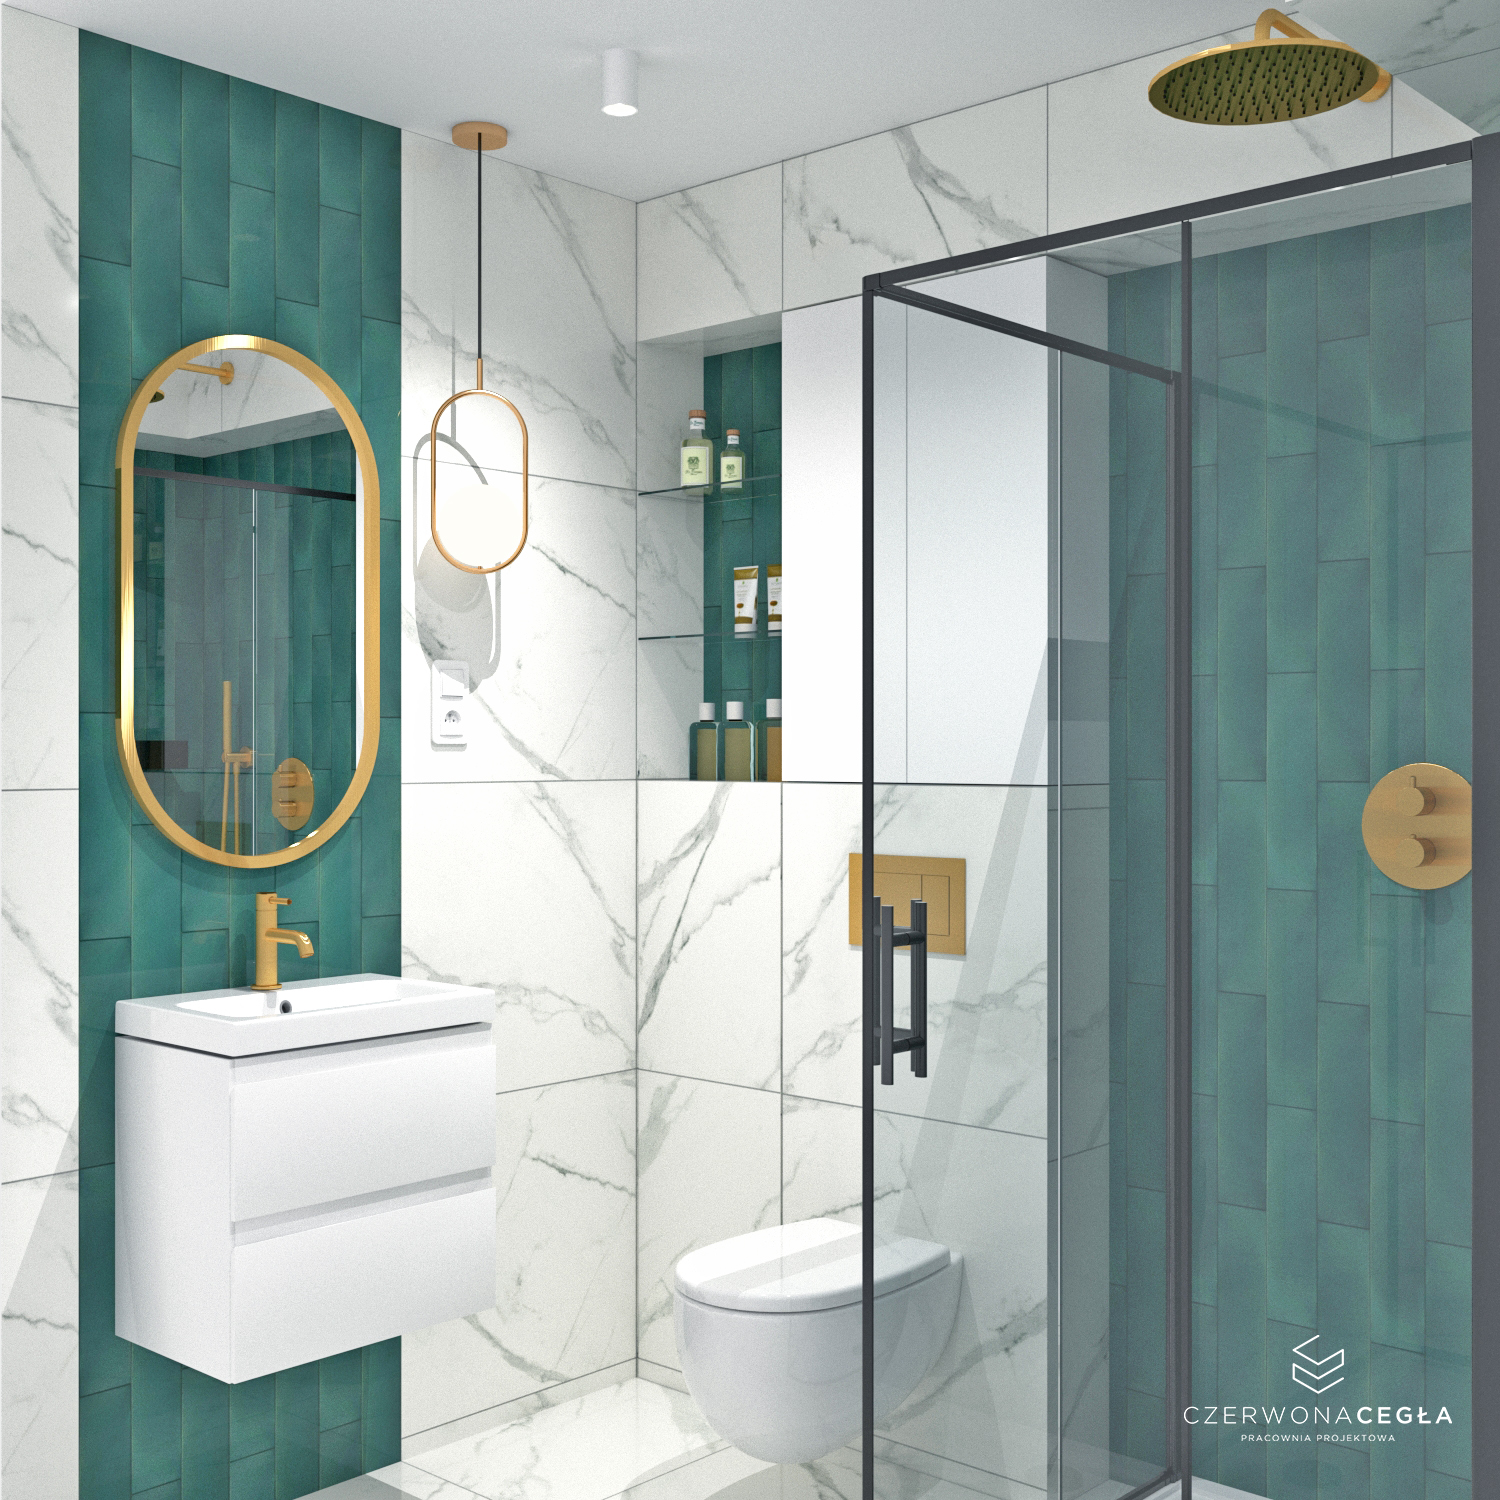 Stylowa łazienka z kombinacją marmuru i butelkowej zieleni, podkreślająca luksus i nowoczesny design